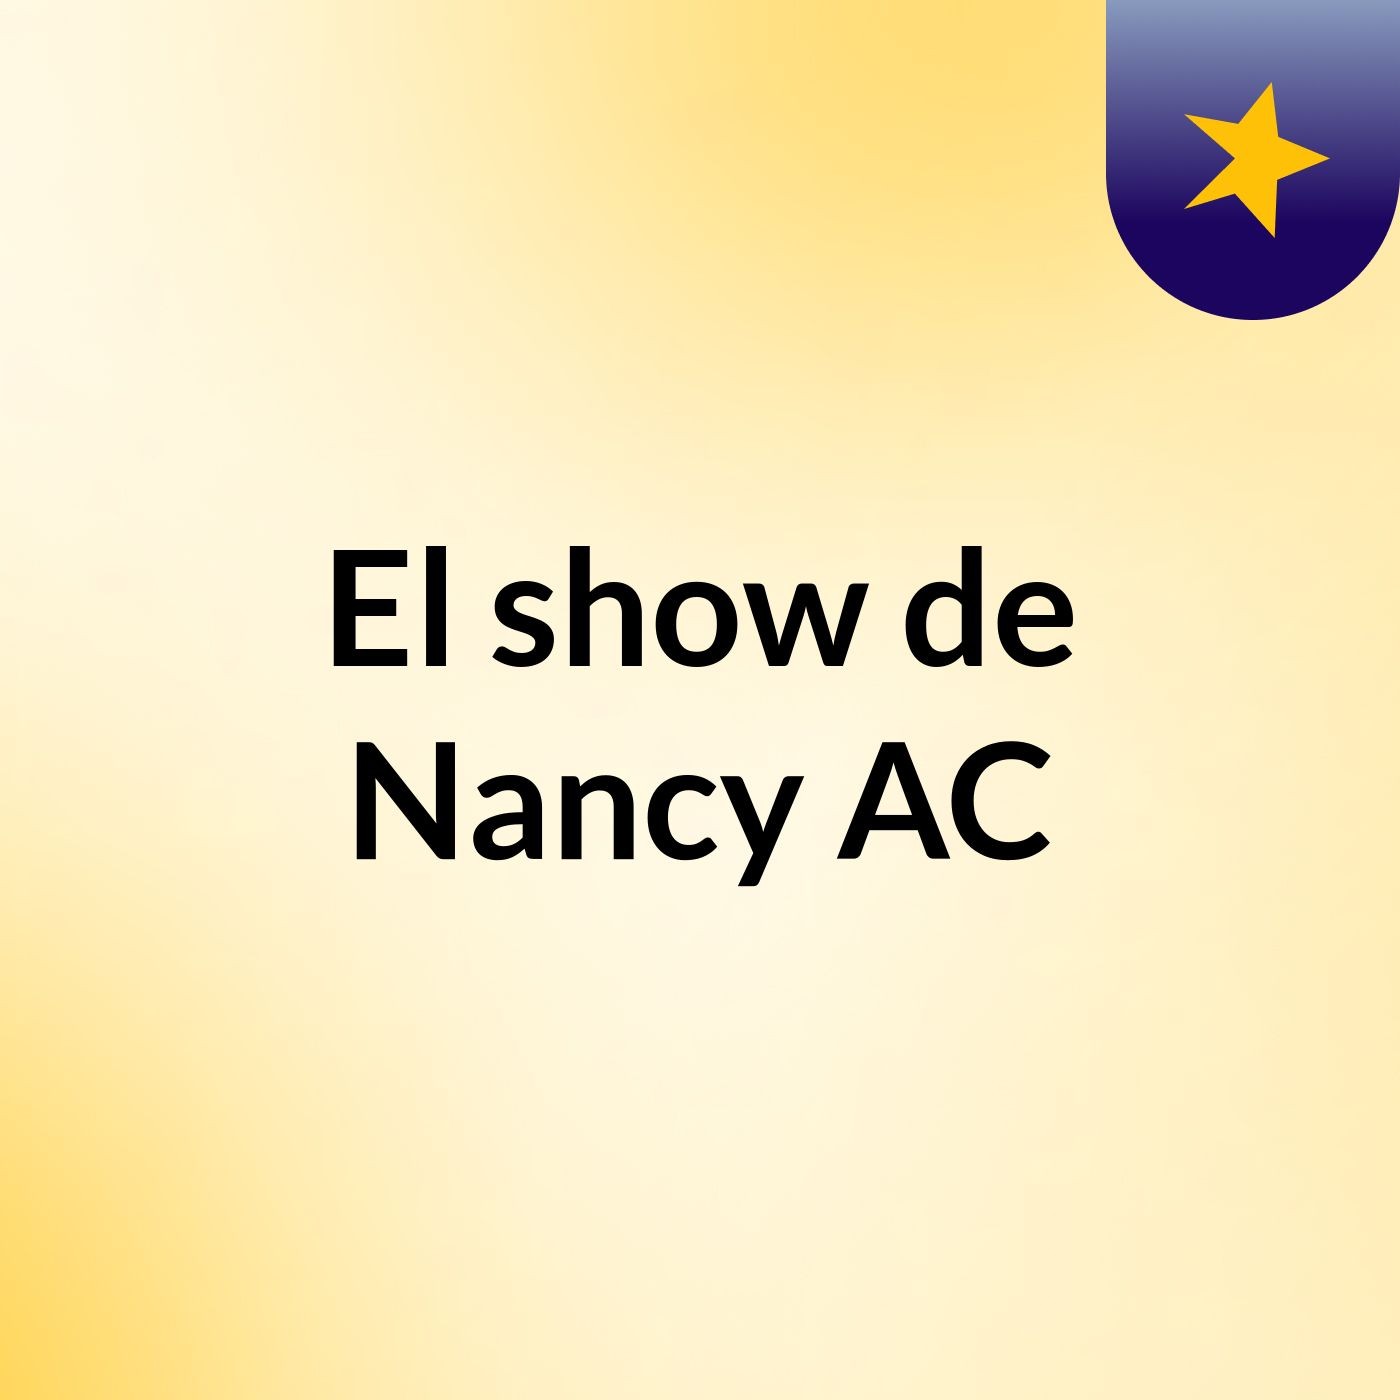 Episodio 1 - El show de Nancy AC